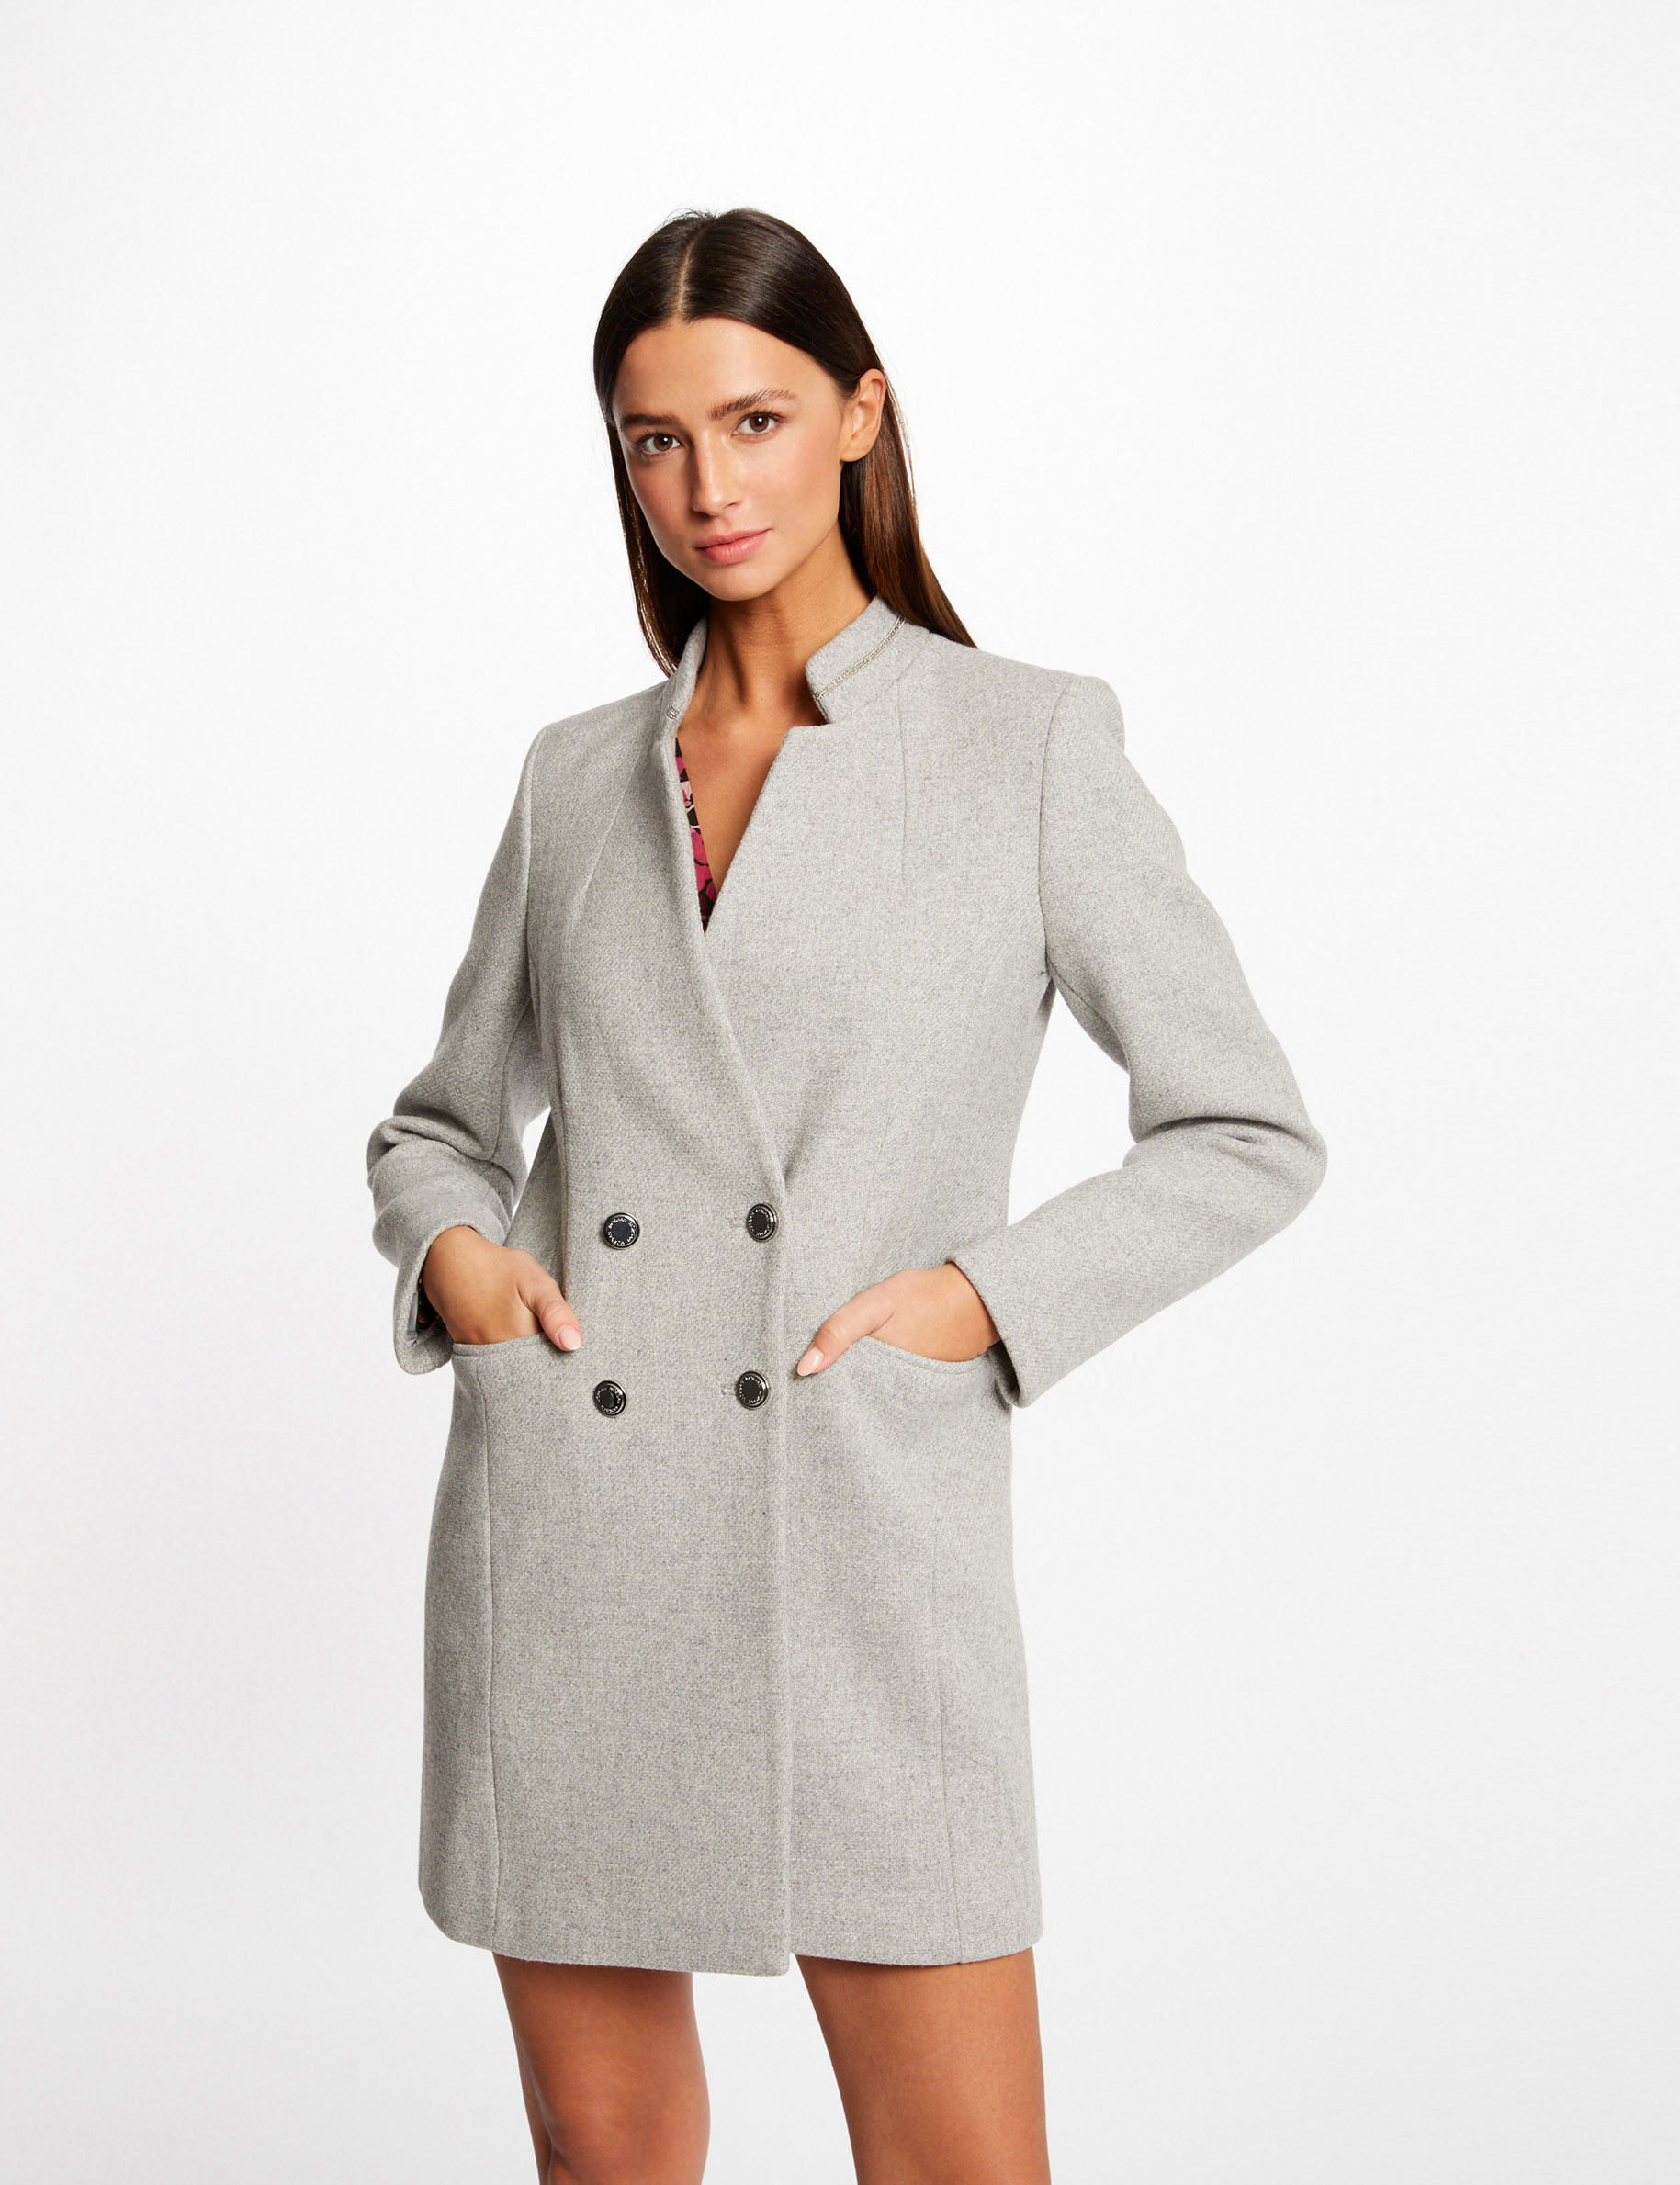 Manteau cintré boutonné gris clair femme